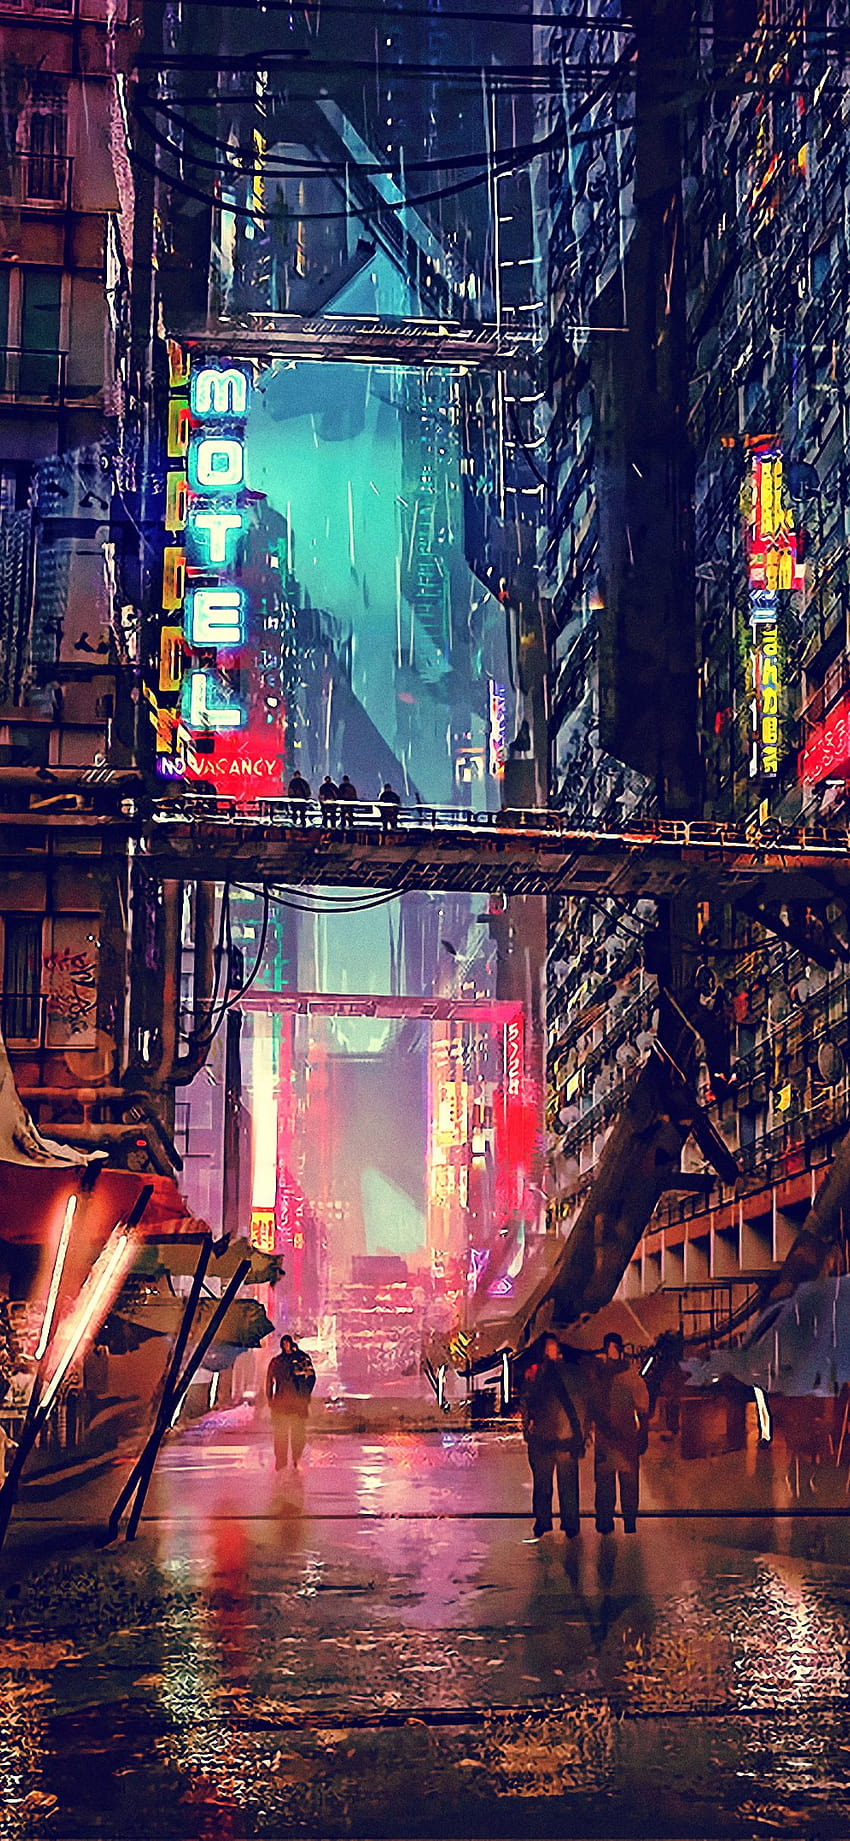 1125x2436 Ciencia ficción Cyberpunk Futuristic City Digital Art, retro future mobile fondo de pantalla del teléfono